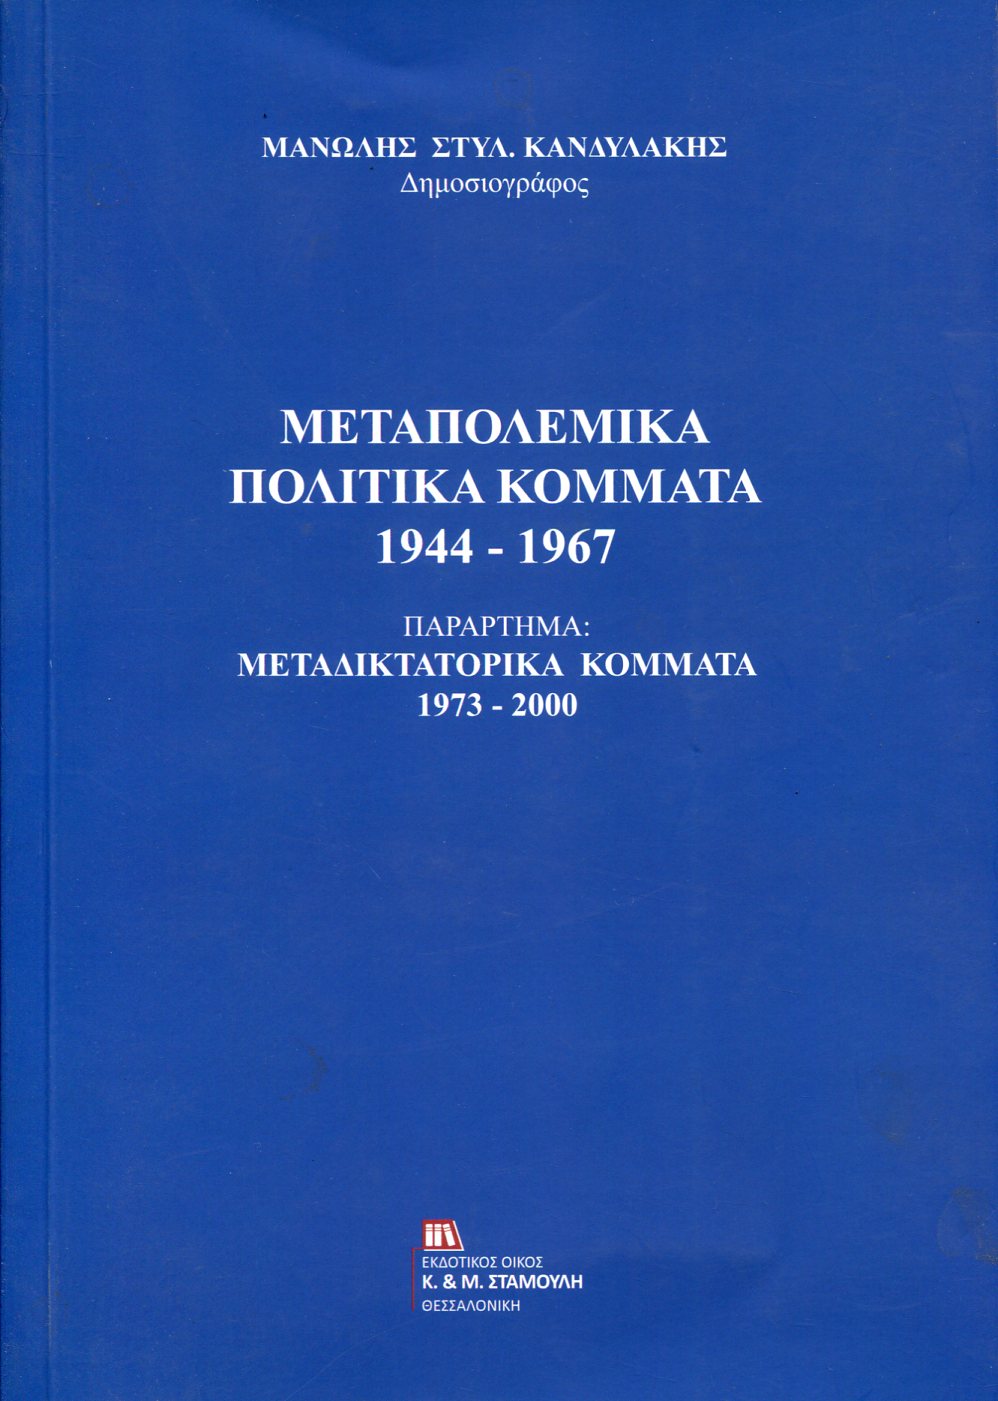 ΜΕΤΑΠΟΛΕΜΙΚΑ ΠΟΛΙΤΙΚΑ ΚΟΜΜΑΤΑ 1944-1967